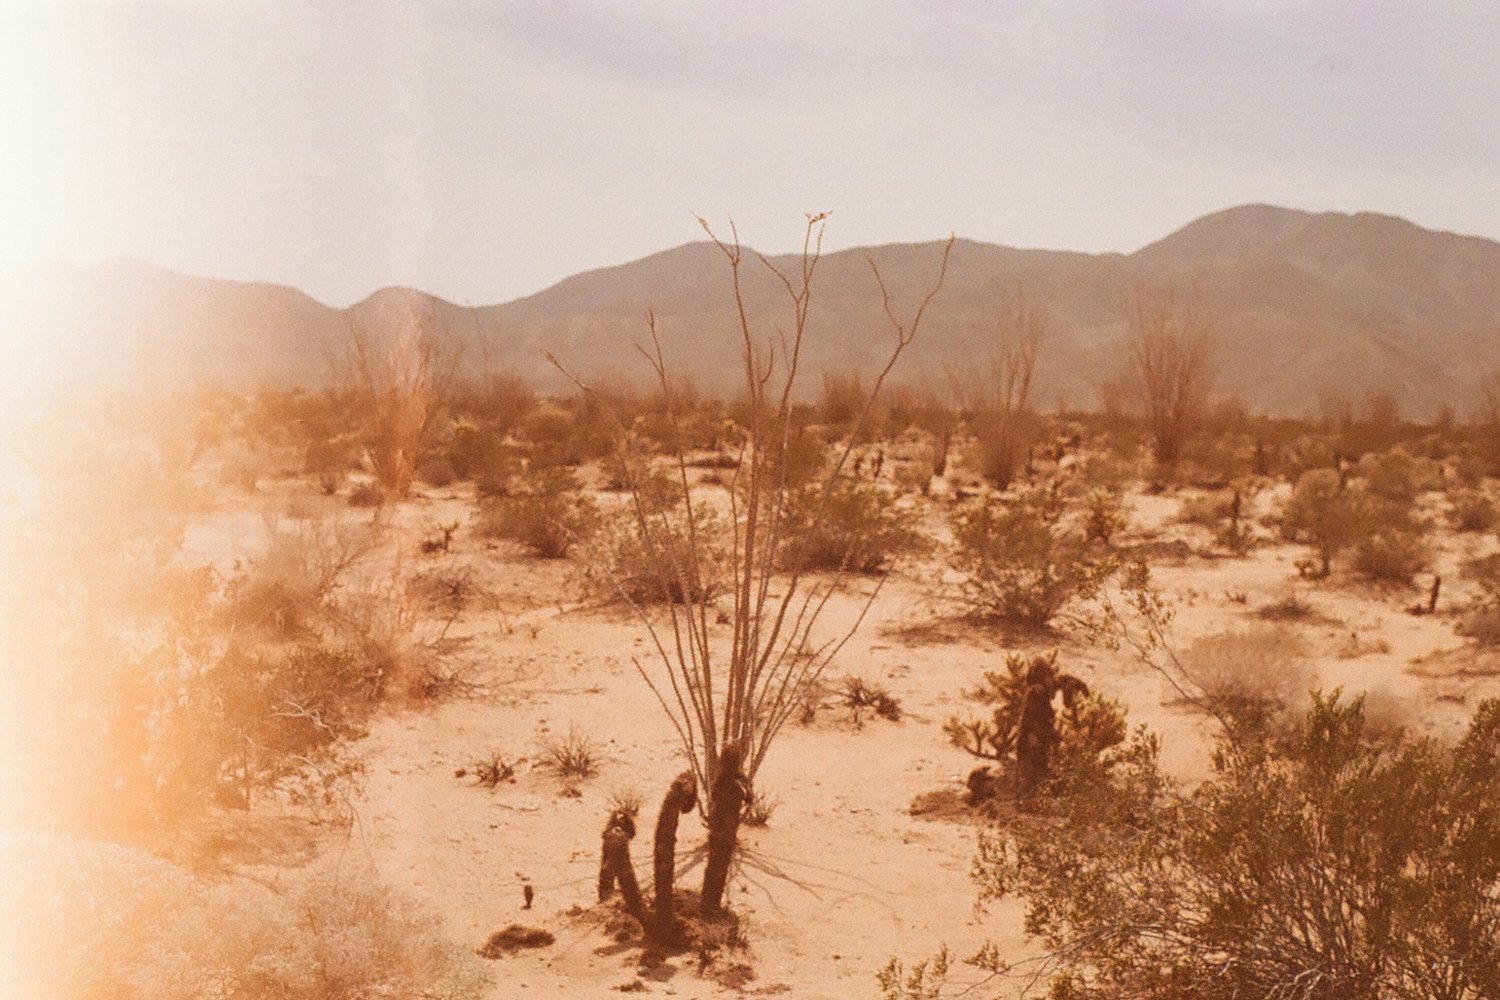 Desertfilm35mm.jpg